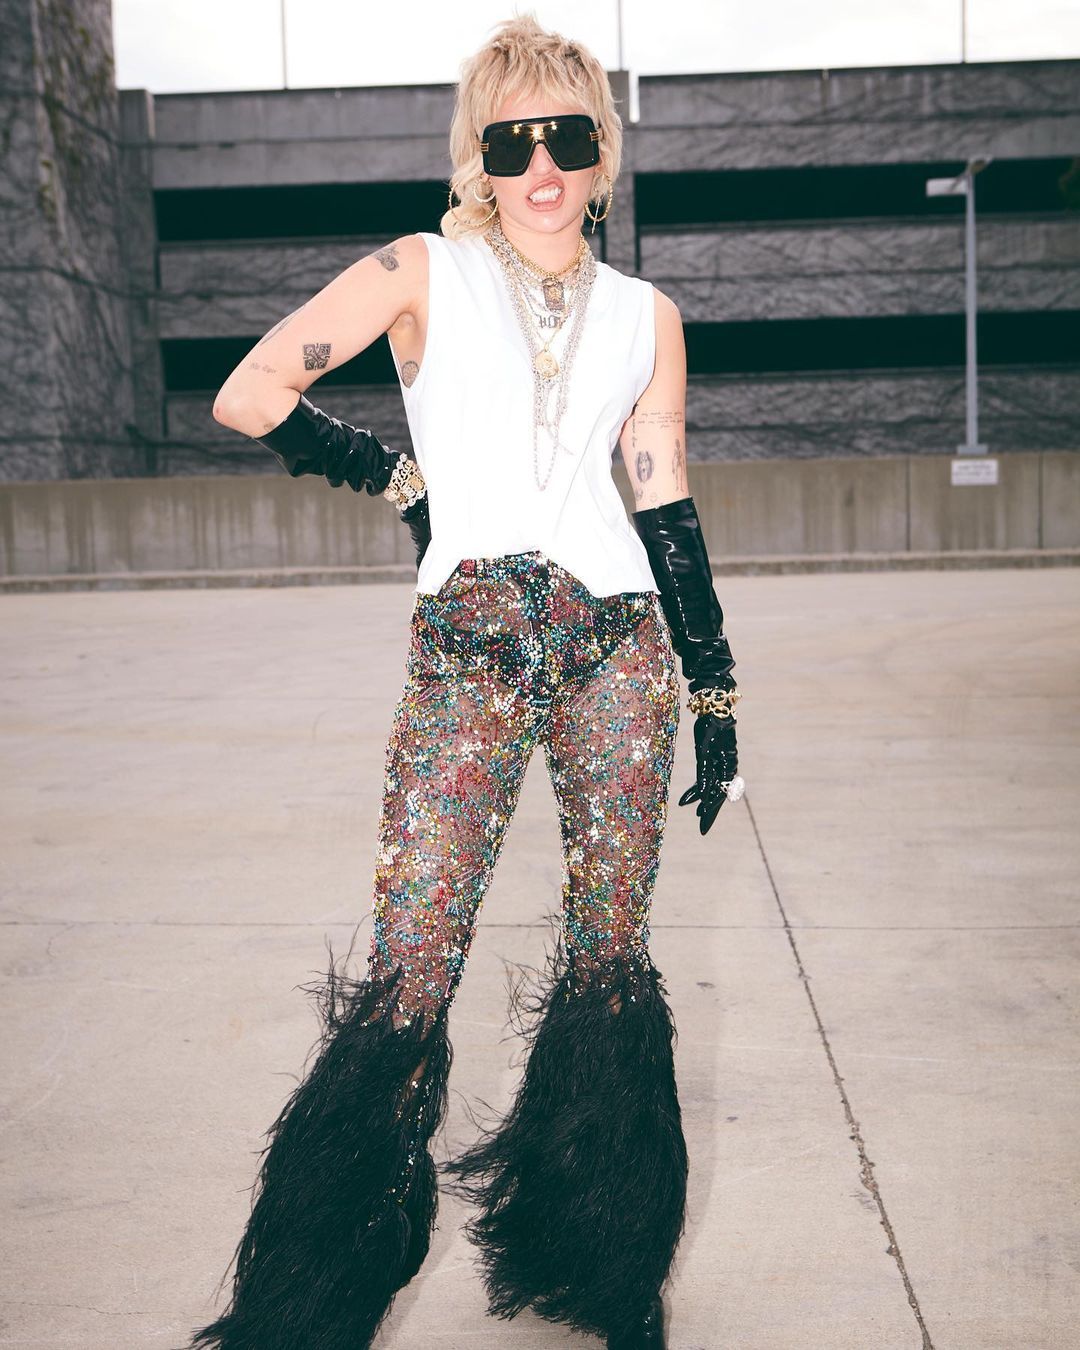 Miley Cyrus in sheer pants